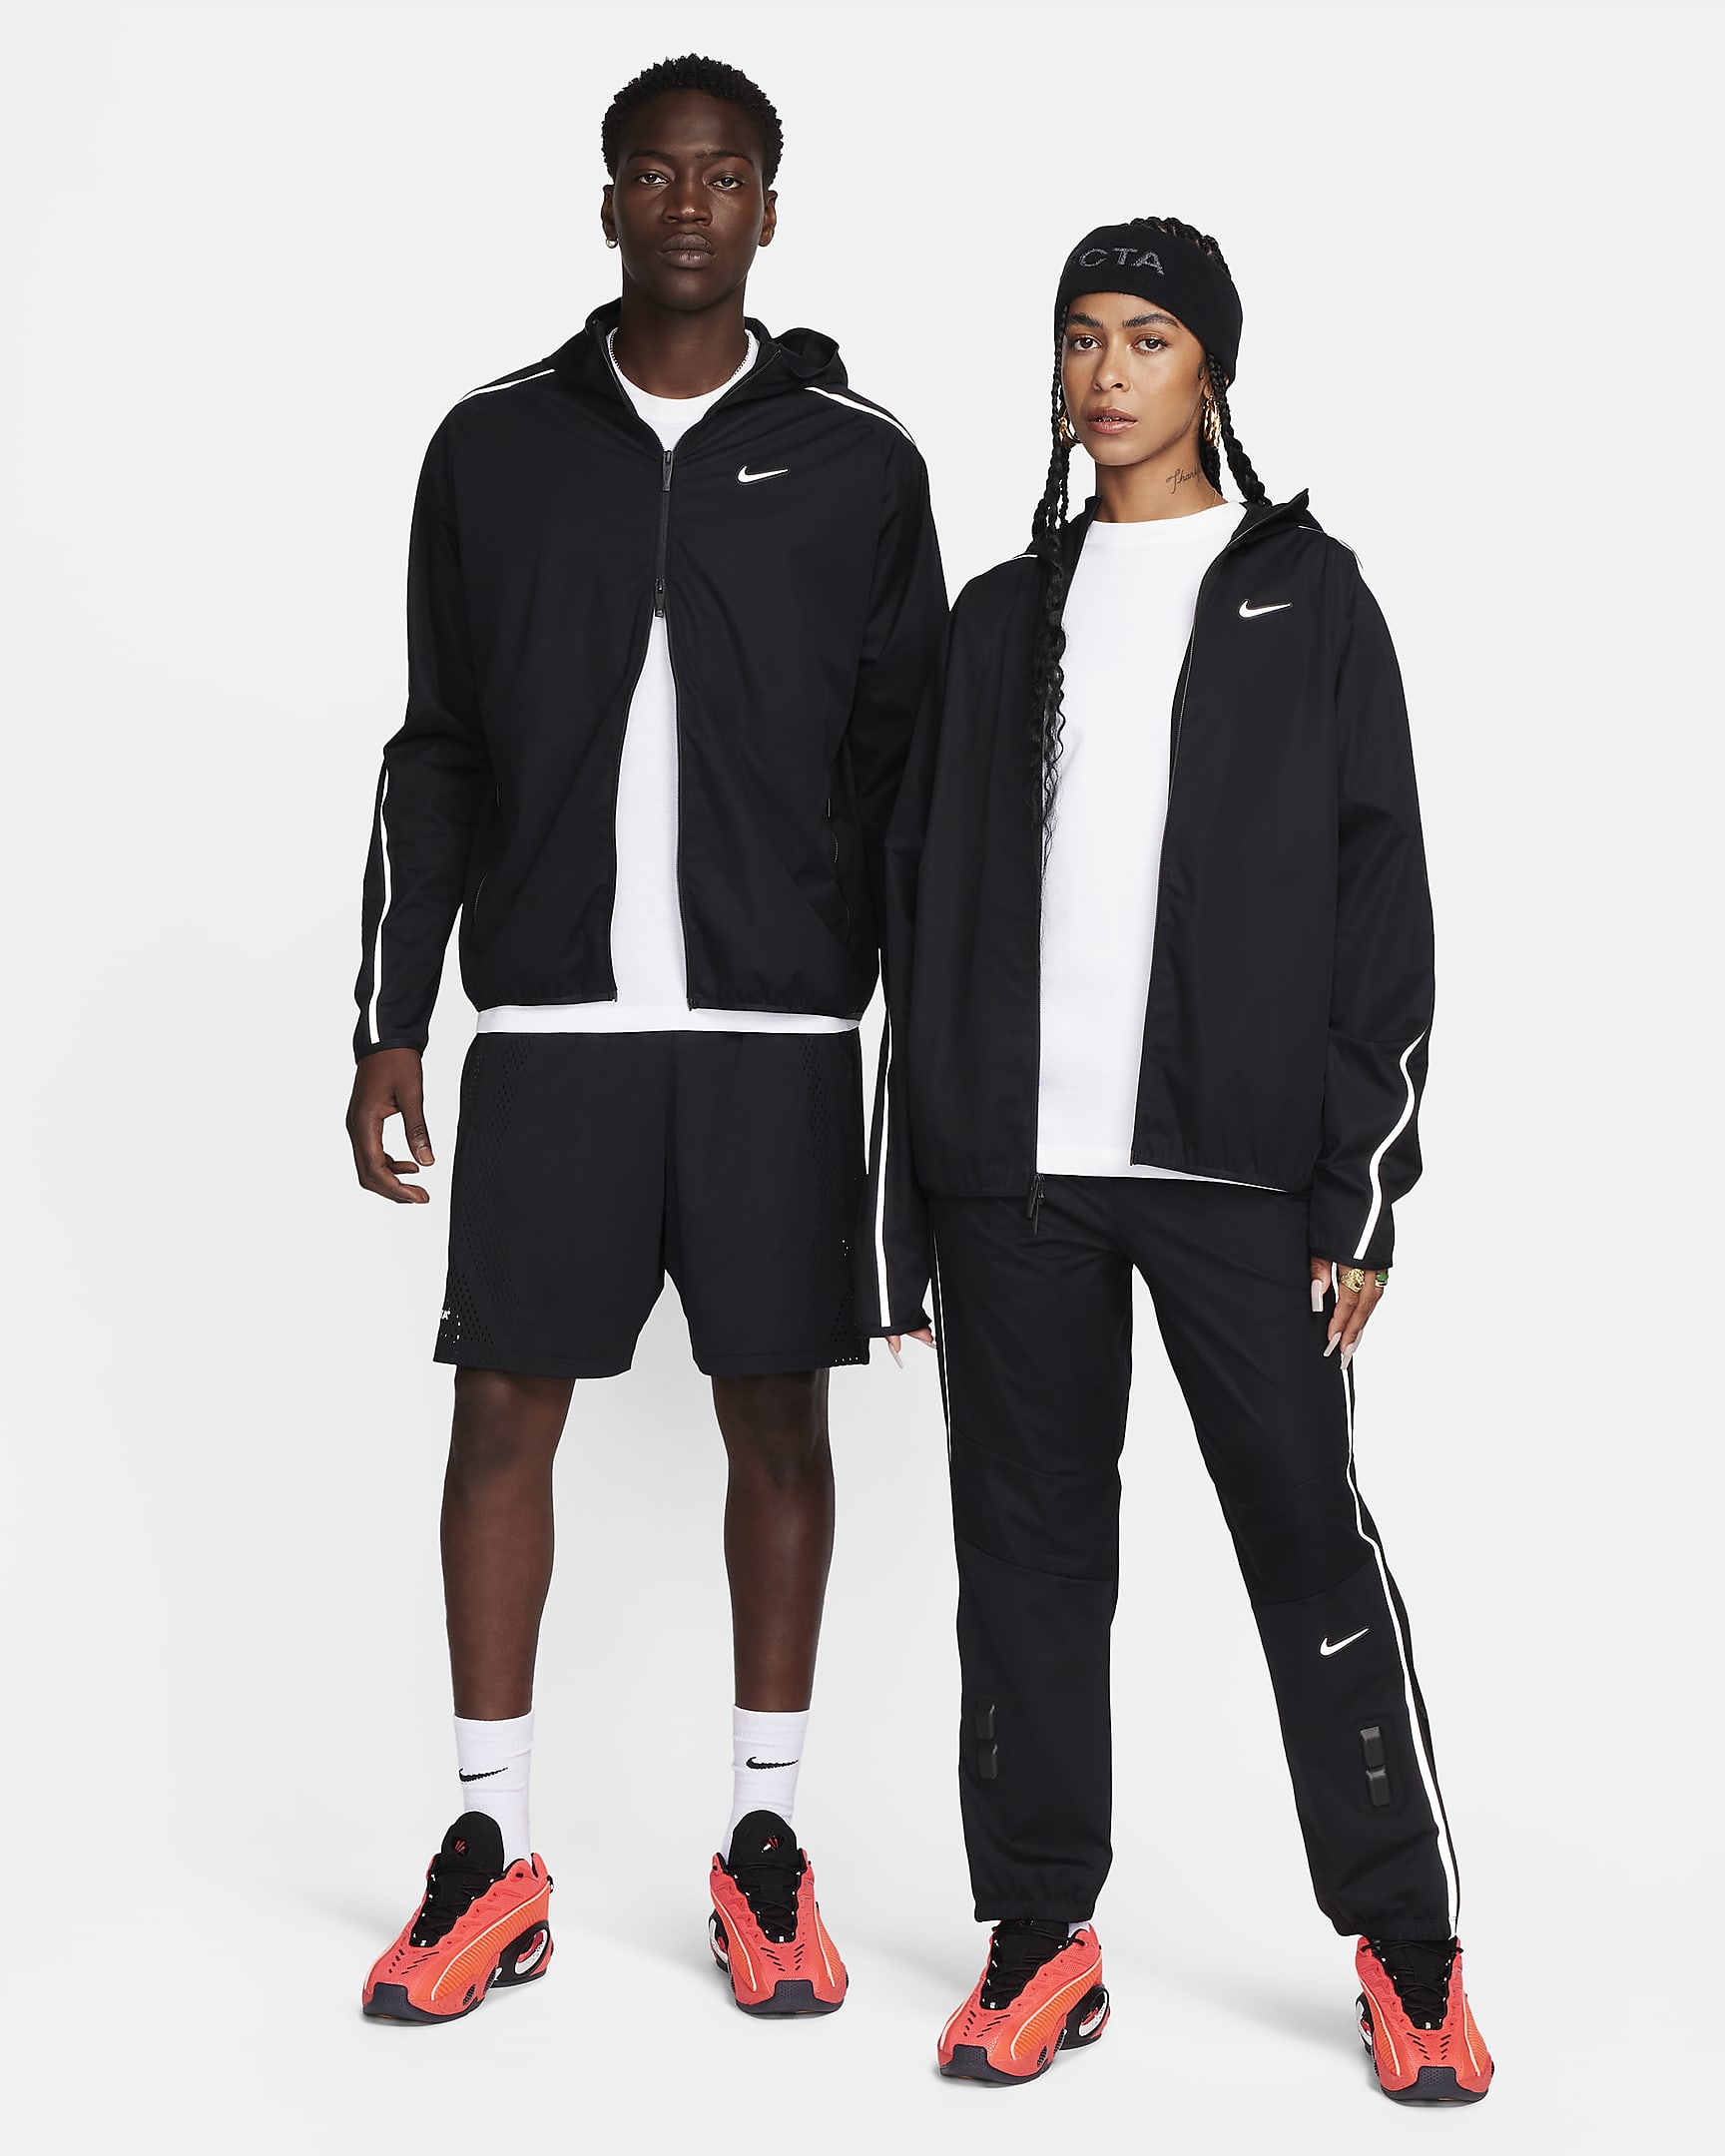 NOCTA Men's Warm-Up Jacket. Nike.com